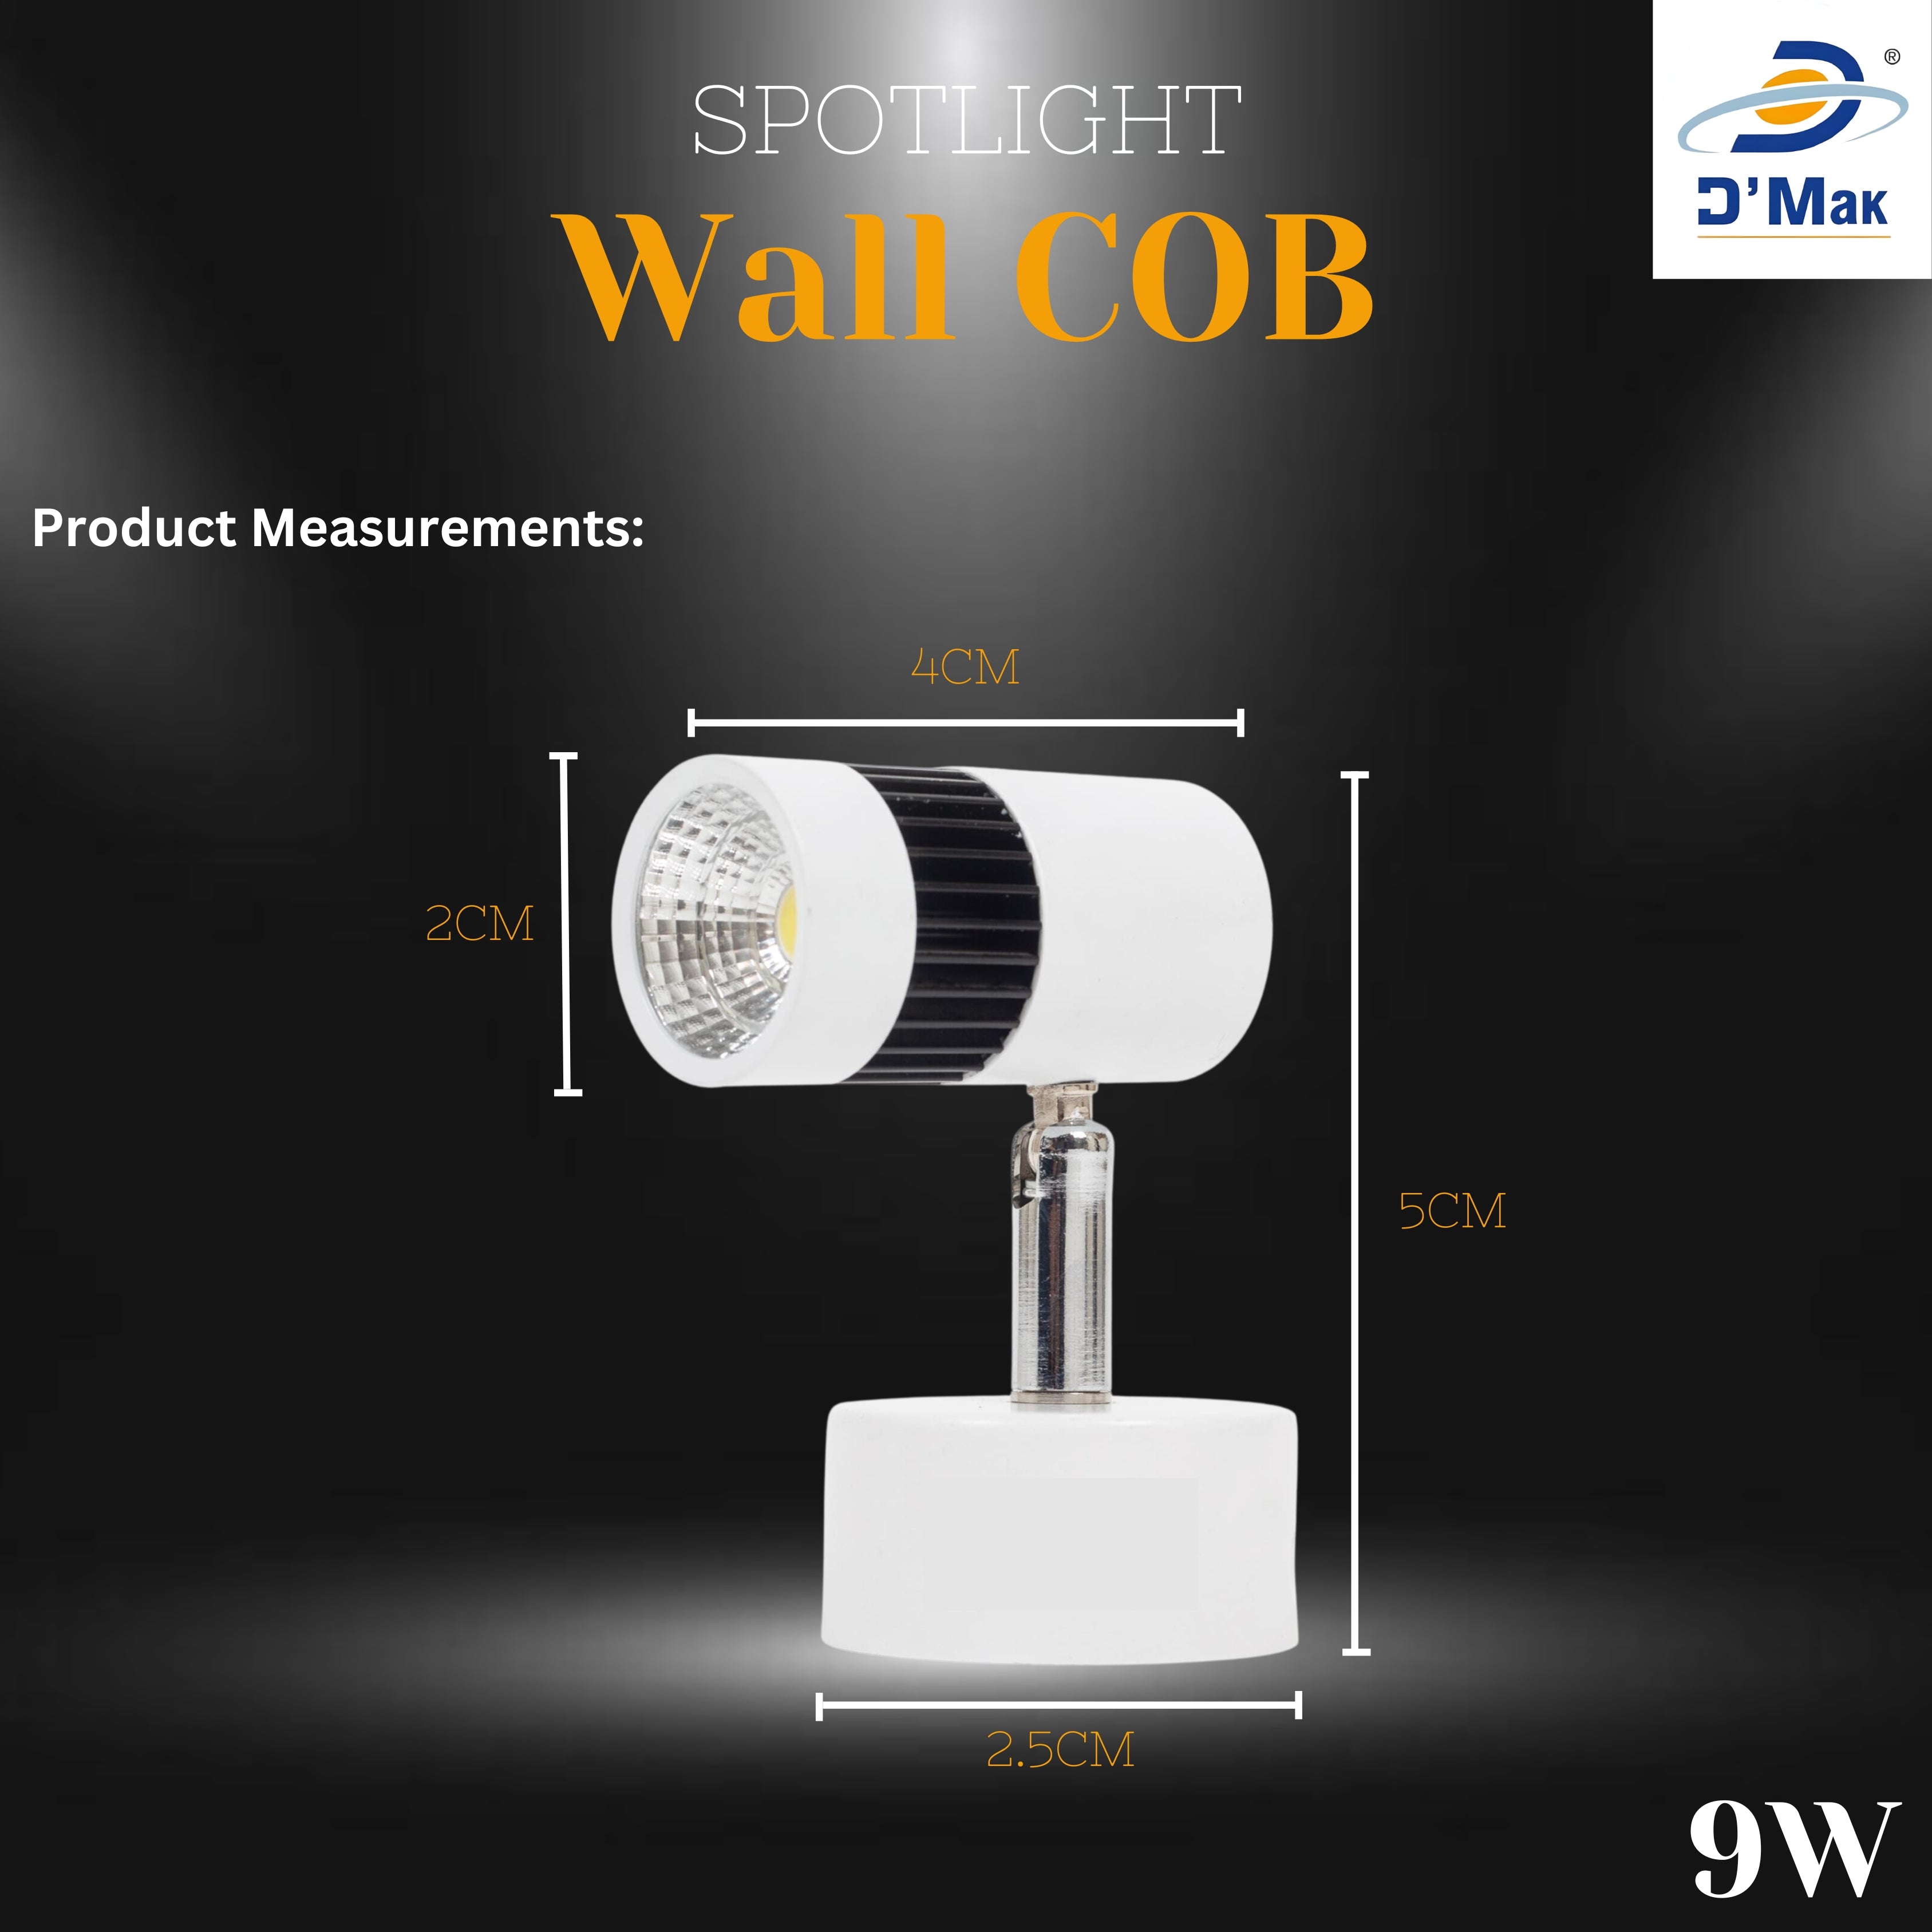 9 Watt Led White Body Wall Light for focusing wall or photo frame